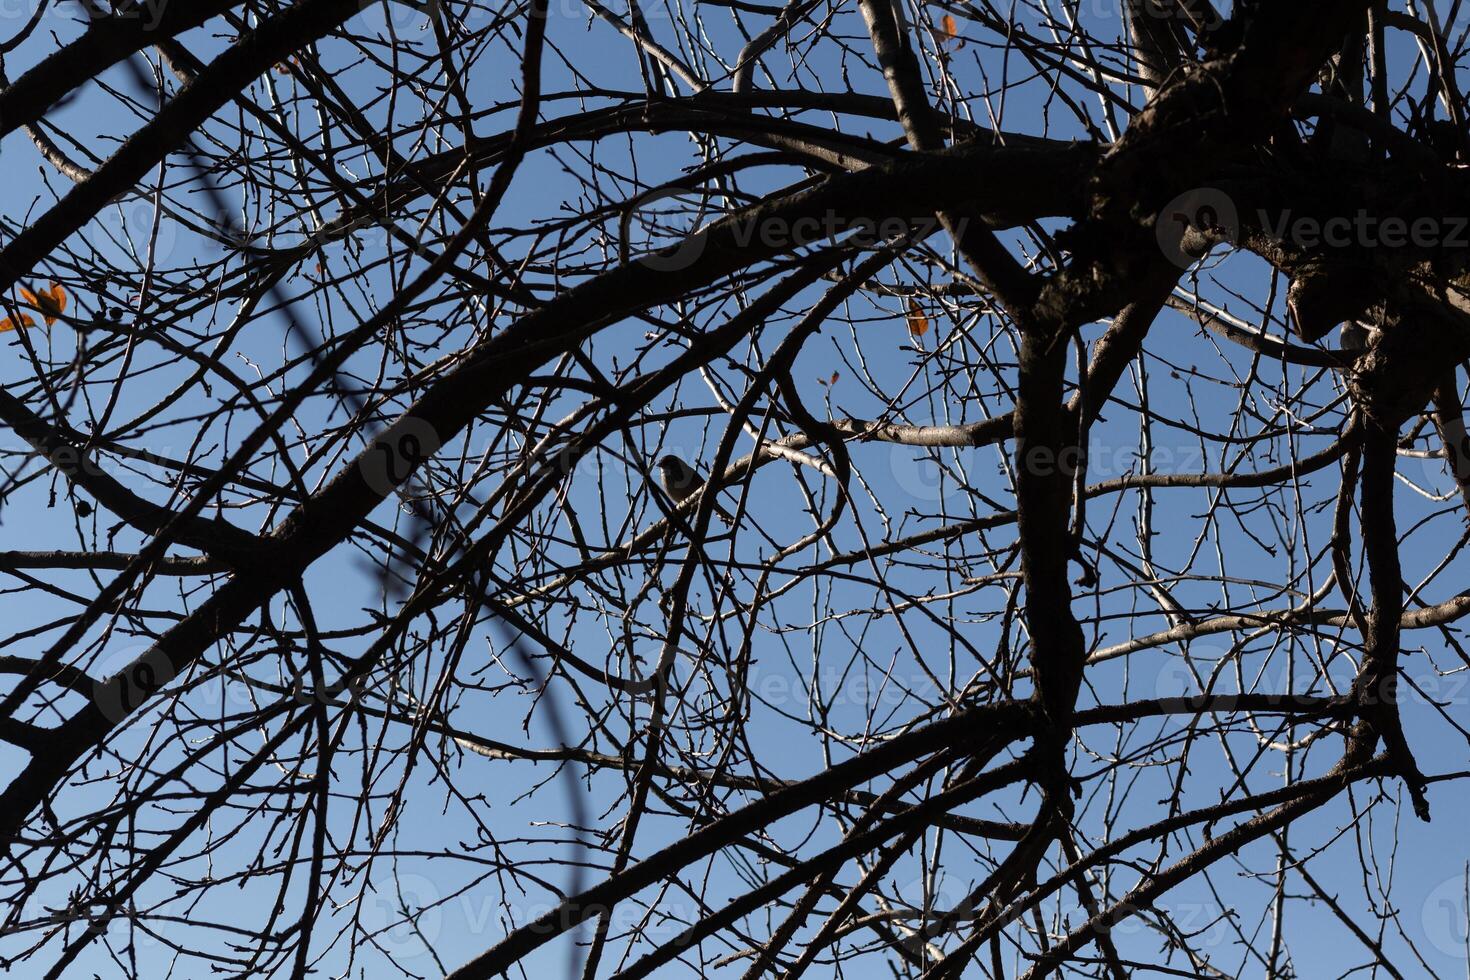 esta linda pequeño pájaro se sentó encaramado en el ramas de esta árbol. cautelosamente mirando fuera para seguridad. el desnudo extremidades Ayudar a camuflaje su cuerpo y mantener él seguro desde depredadores foto